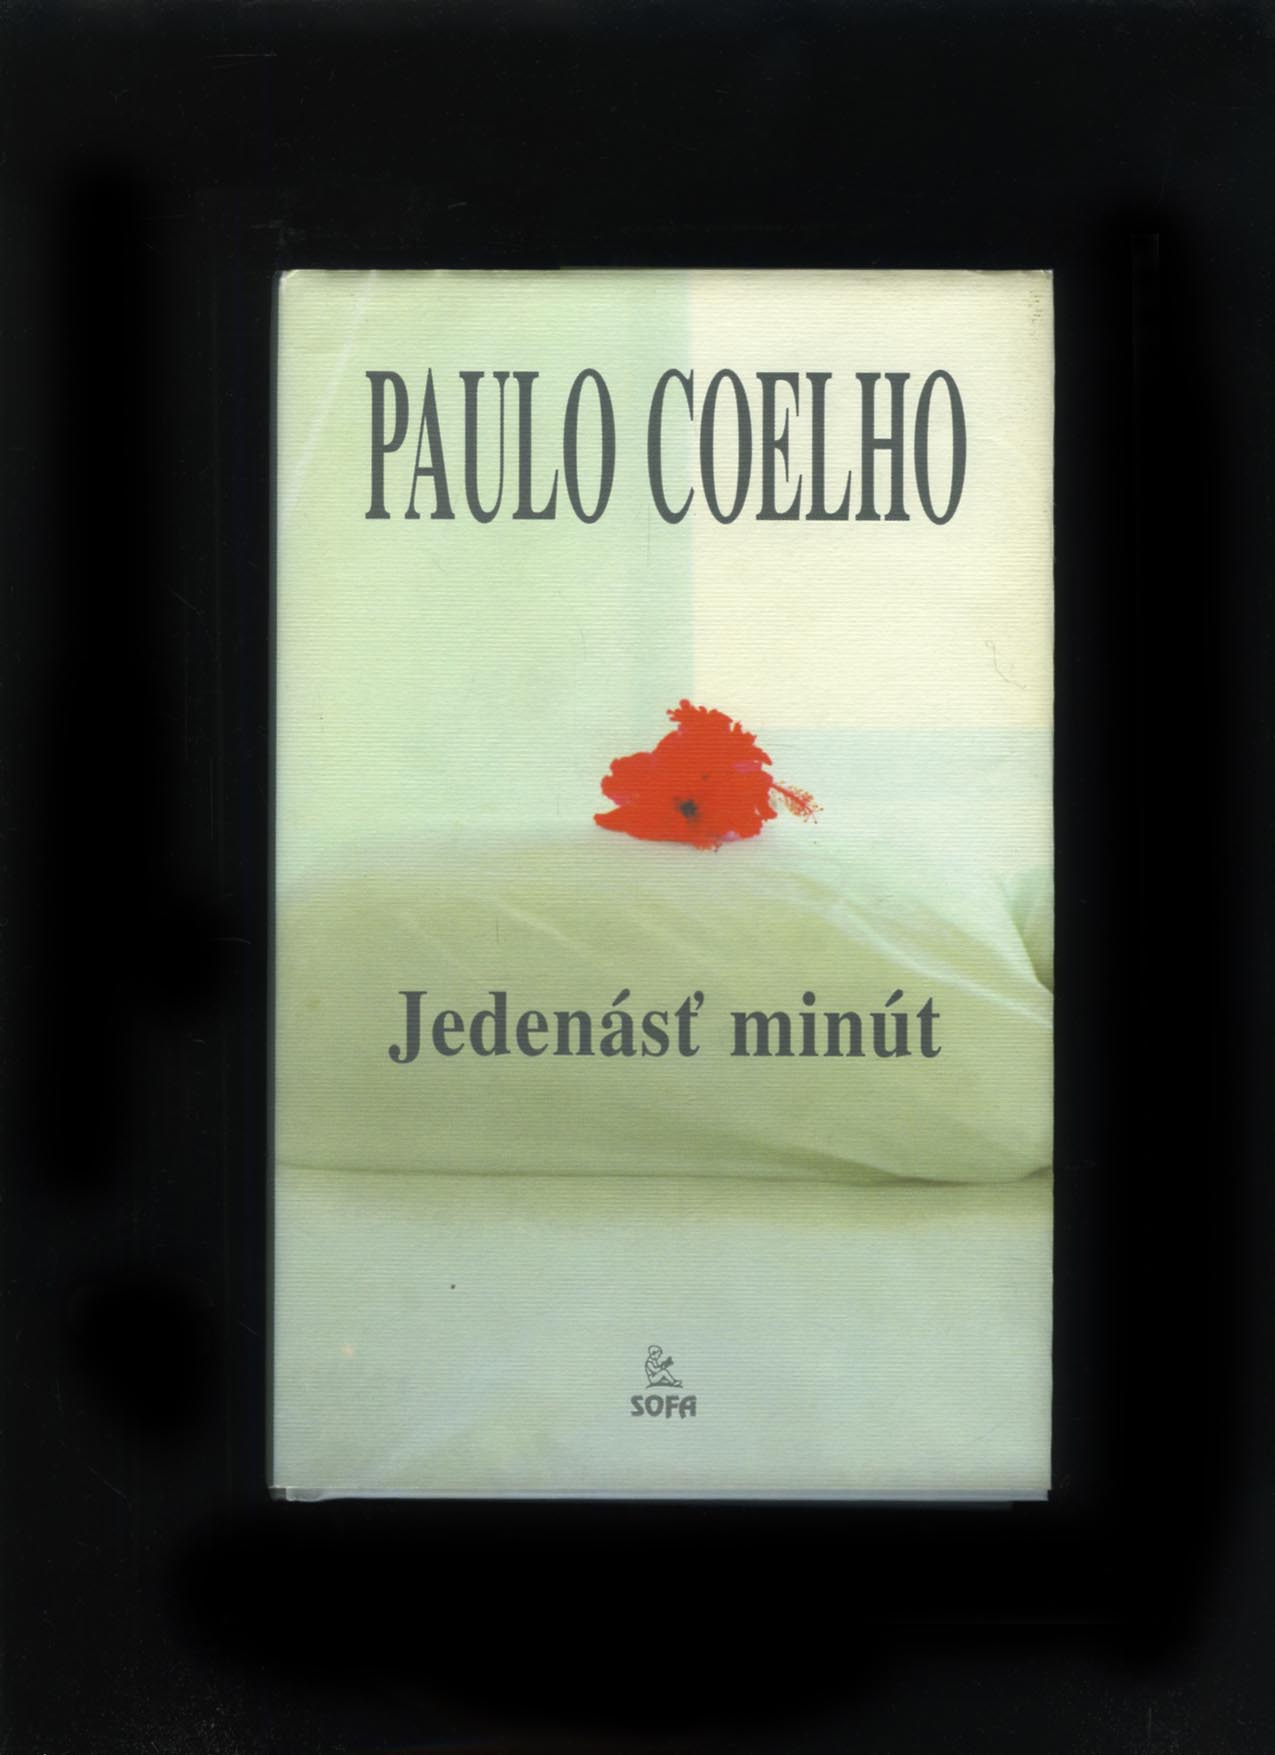 Jedenásť minút (Paulo Coelho)